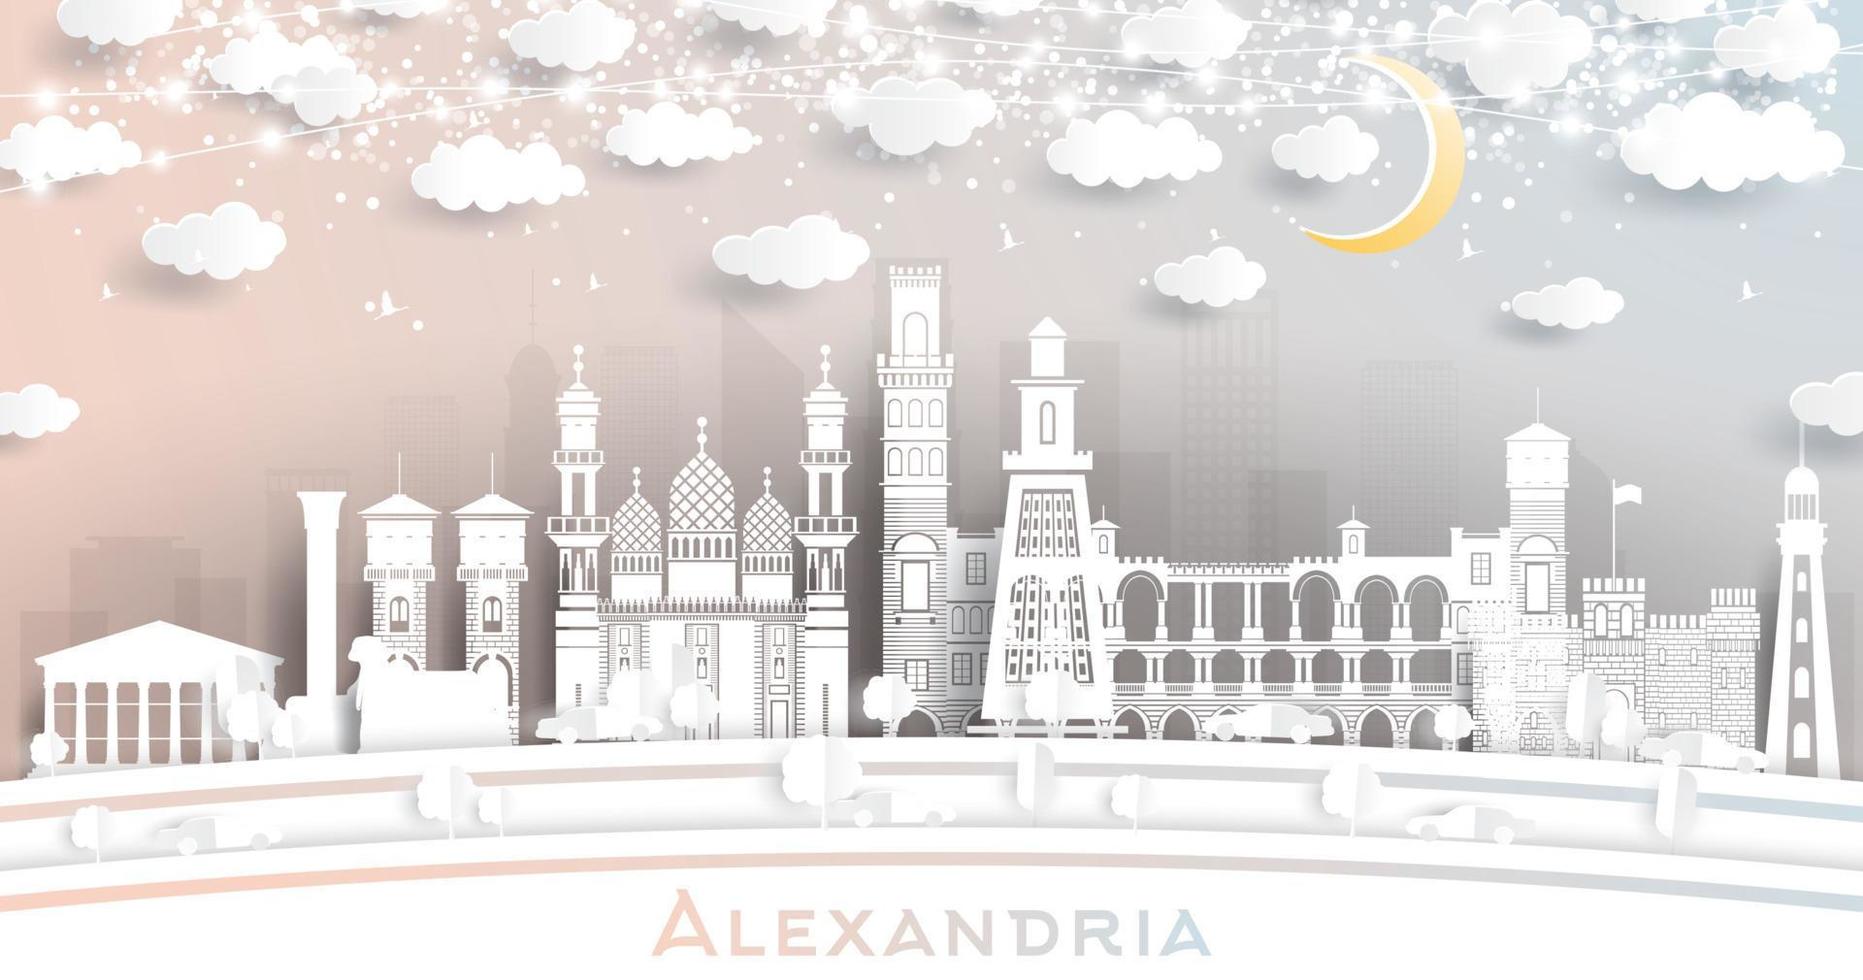 alexandria egypt city skyline im papierschnittstil mit weißen gebäuden, mond und neongirlande. vektor